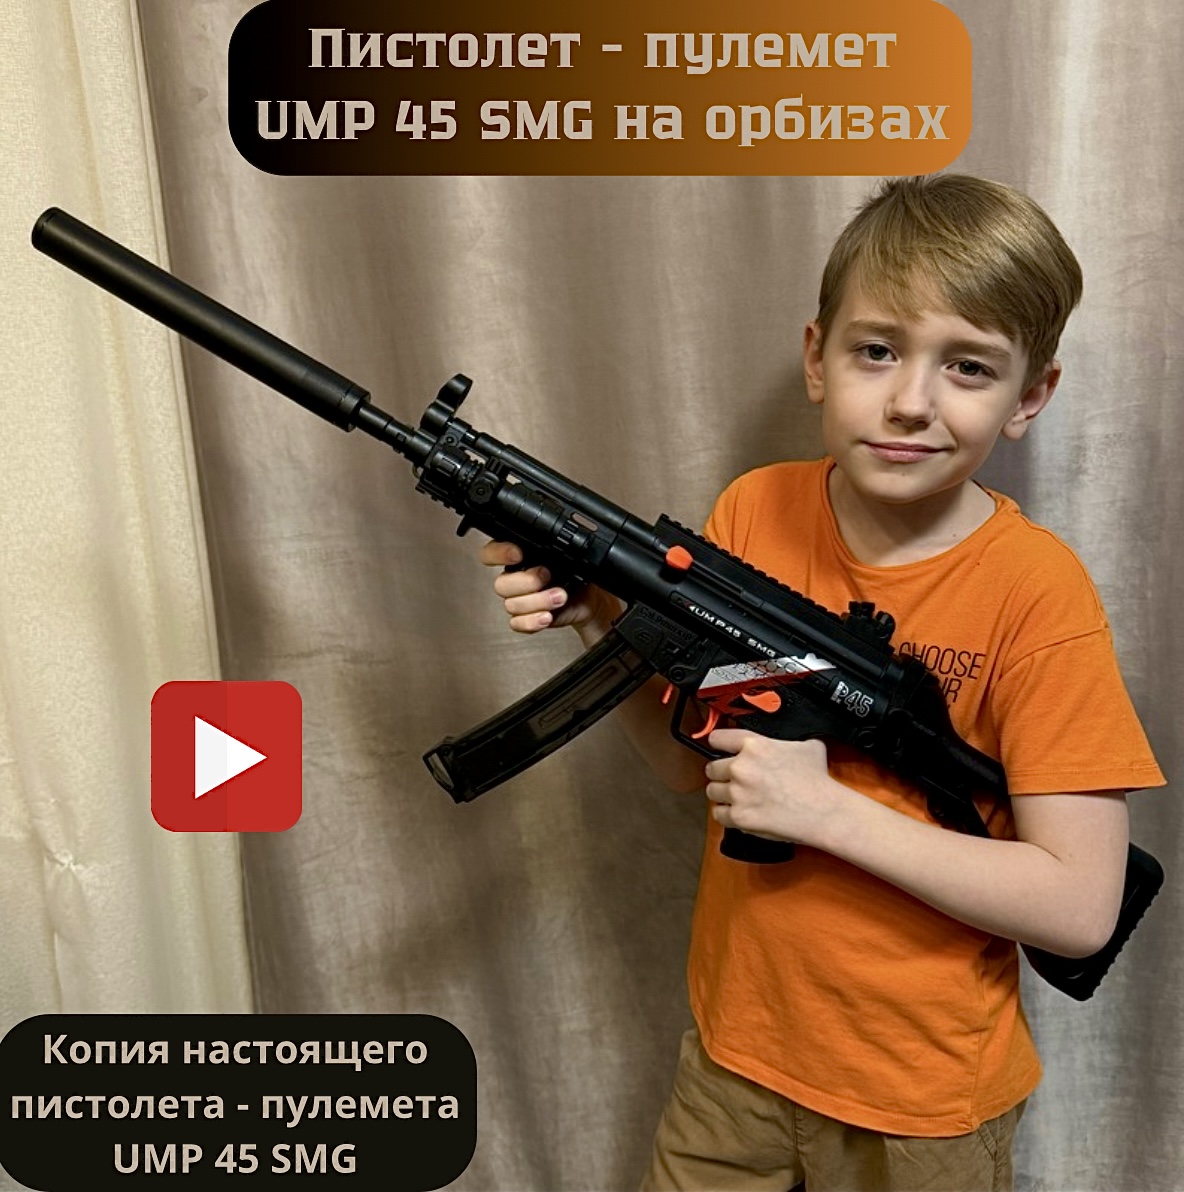 Пистолет-пулемет детский игровой RanCap UMP 45 SMG с орбизами (игрушка) пистолет с орбизами cozy house